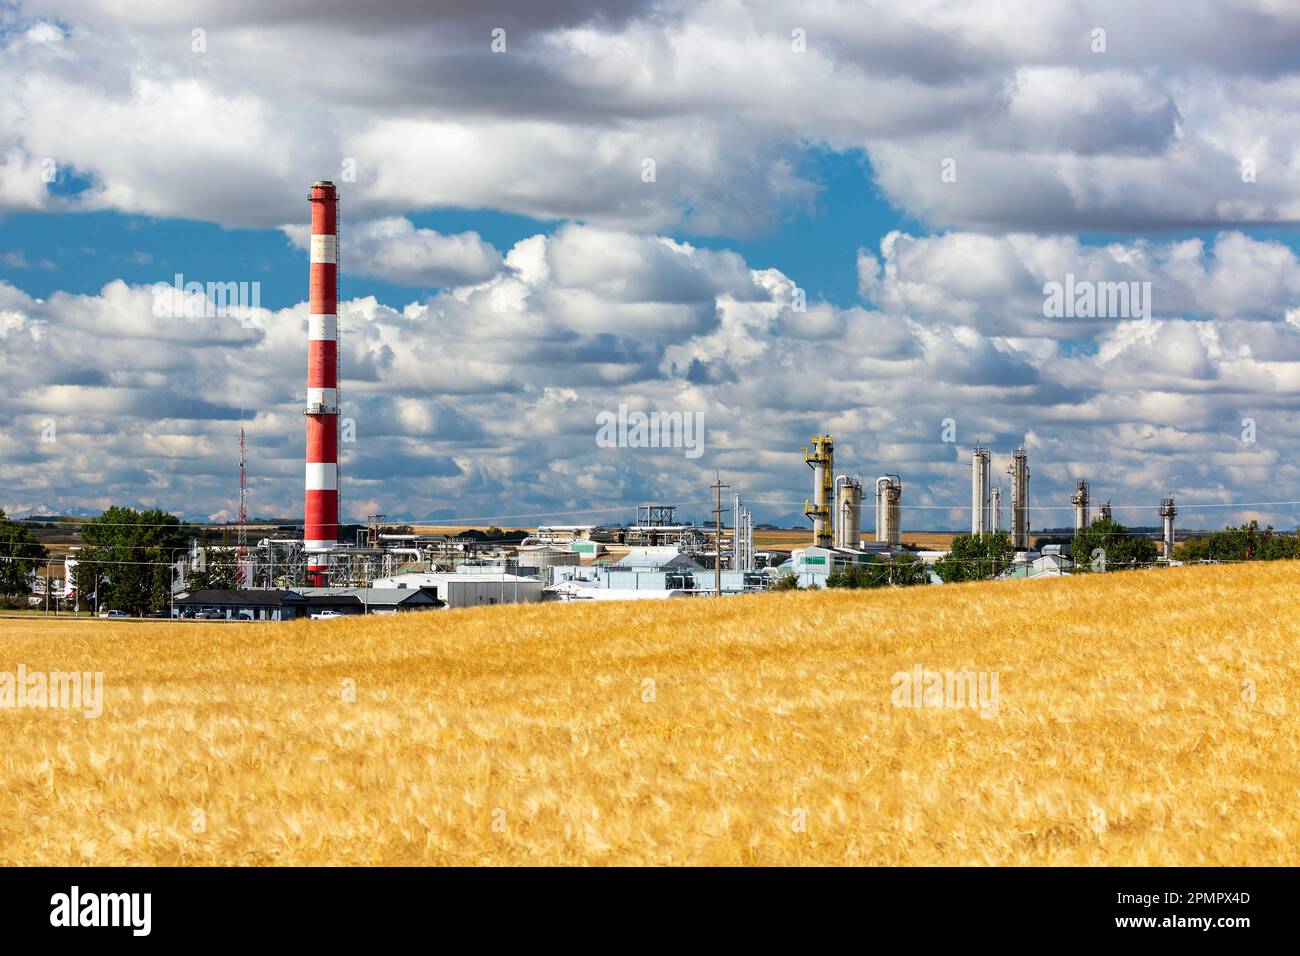 Impianto a gas con torre a righe rosse e bianche con nuvole e cielo blu e un raccolto di grano dorato in primo piano, a sud di Crossfield, Alberta Foto Stock